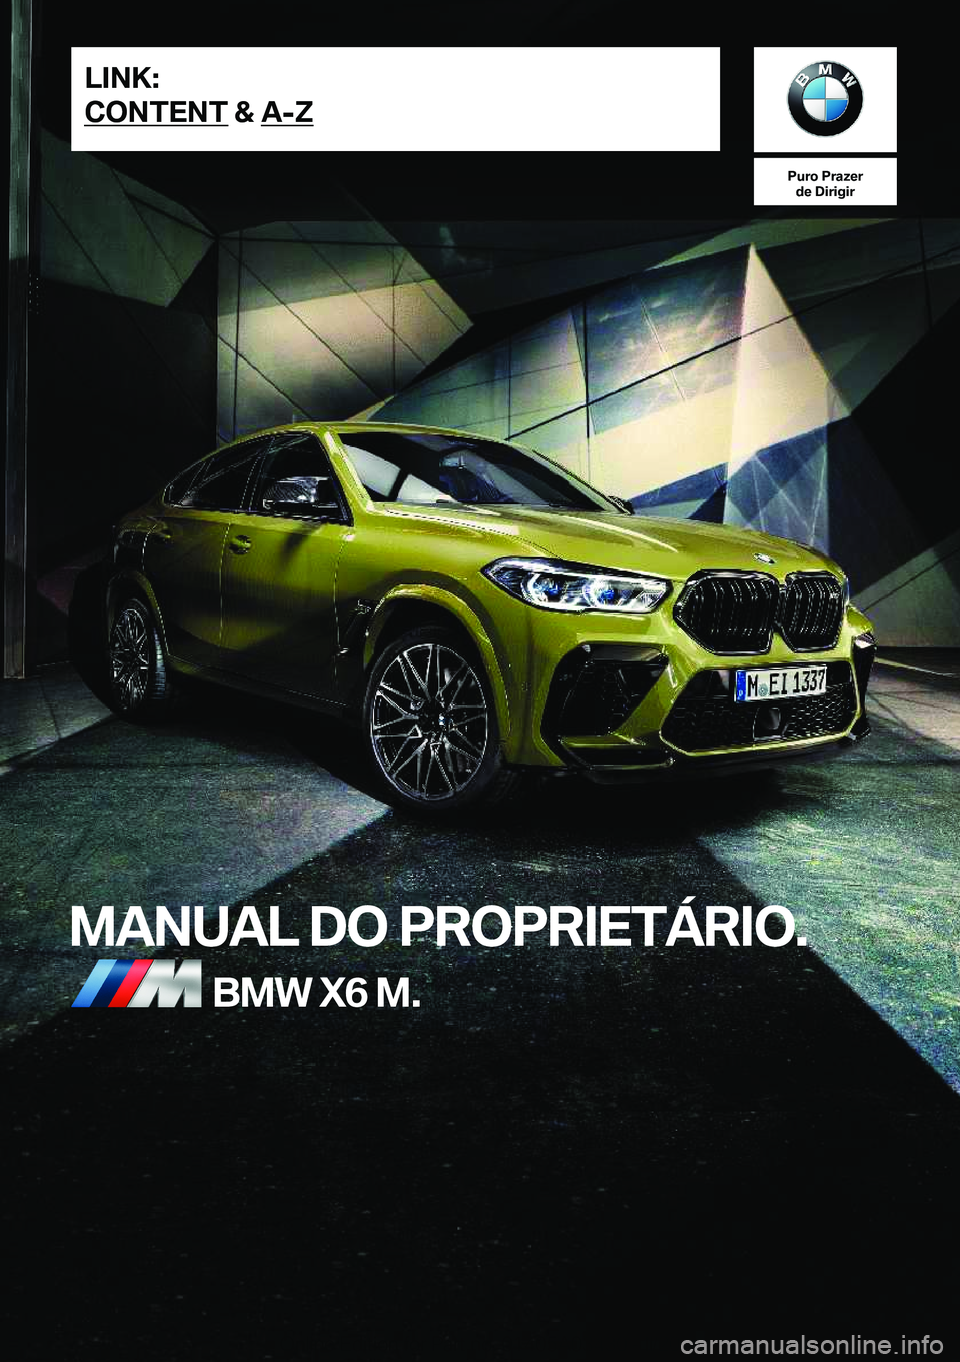 BMW X6 M 2020  Manual do condutor (in Portuguese) �P�u�r�o��P�r�a�z�e�r�d�e��D�i�r�i�g�i�r
�M�A�N�U�A�L��D�O��P�R�O�P�R�I�E�T�Á�R�I�O�.�B�M�W��X�6��M�.�L�I�N�K�:
�C�O�N�T�E�N�T��&��A�-�Z�O�n�l�i�n�e��E�d�i�t�i�o�n��f�o�r��P�a�r�t��n�o�.�